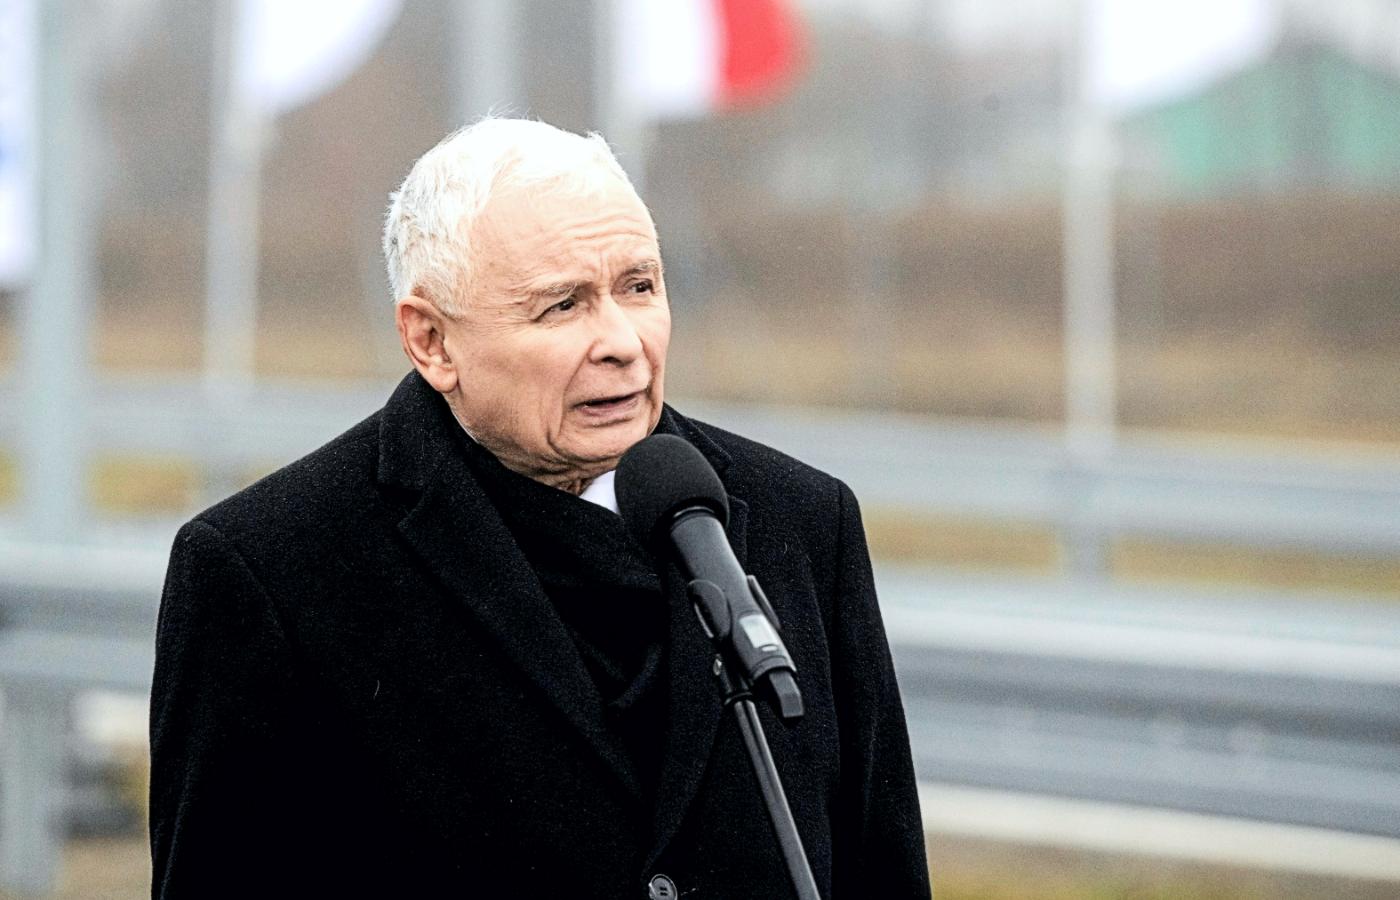 Jarosław Kaczyński podczas otwarcia drogi ekspresowej S19 im. Lecha Kaczyńskiego